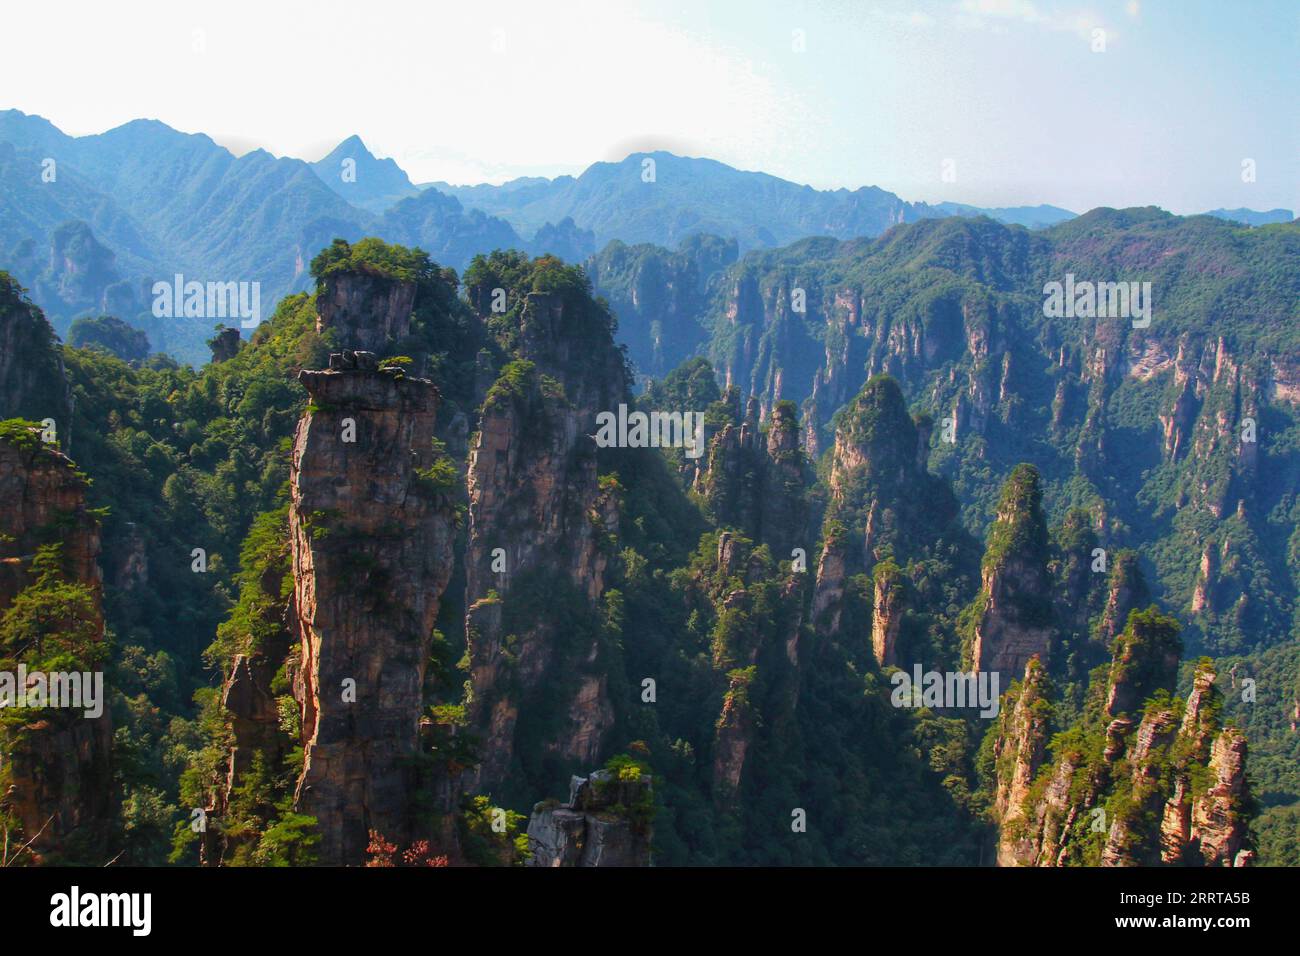 Capturez l'essence époustouflante des montagnes imposantes et pointues emblématiques de la Chine, qui rappellent les paysages impressionnants du film Avatar. Banque D'Images